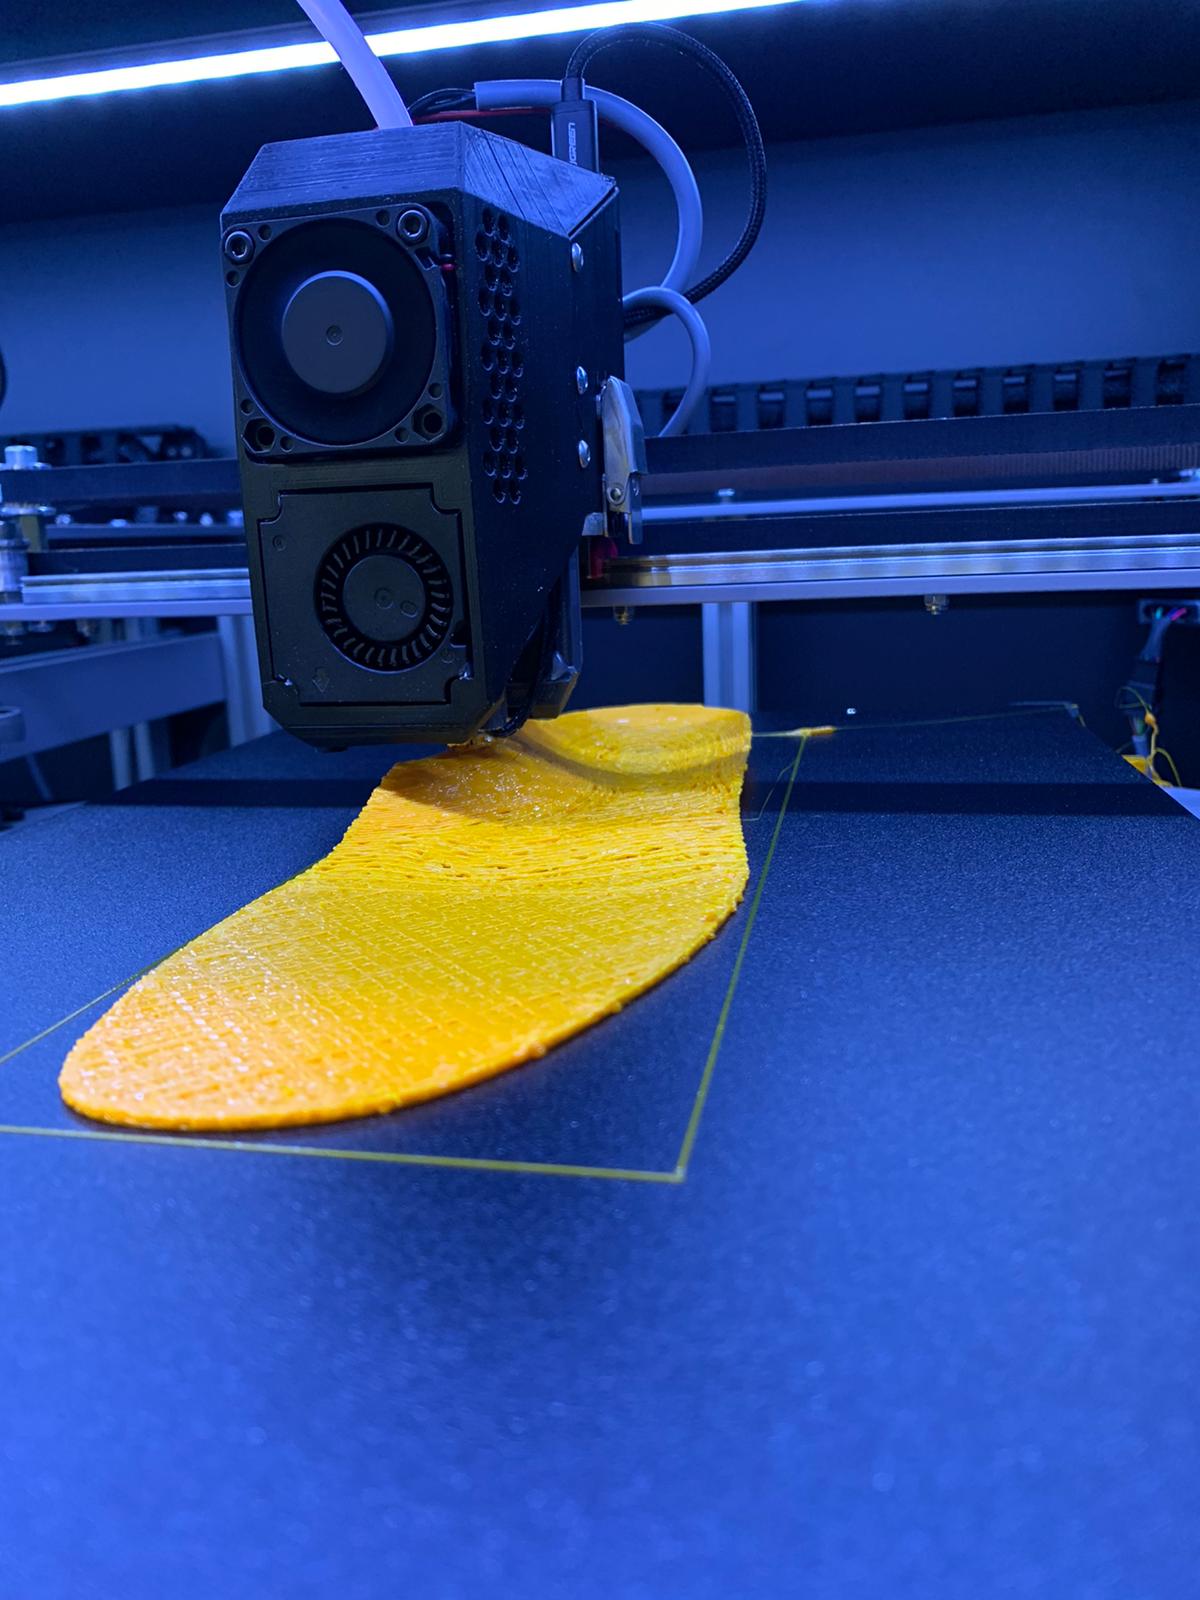 3D printen vooruitgang in toekomst